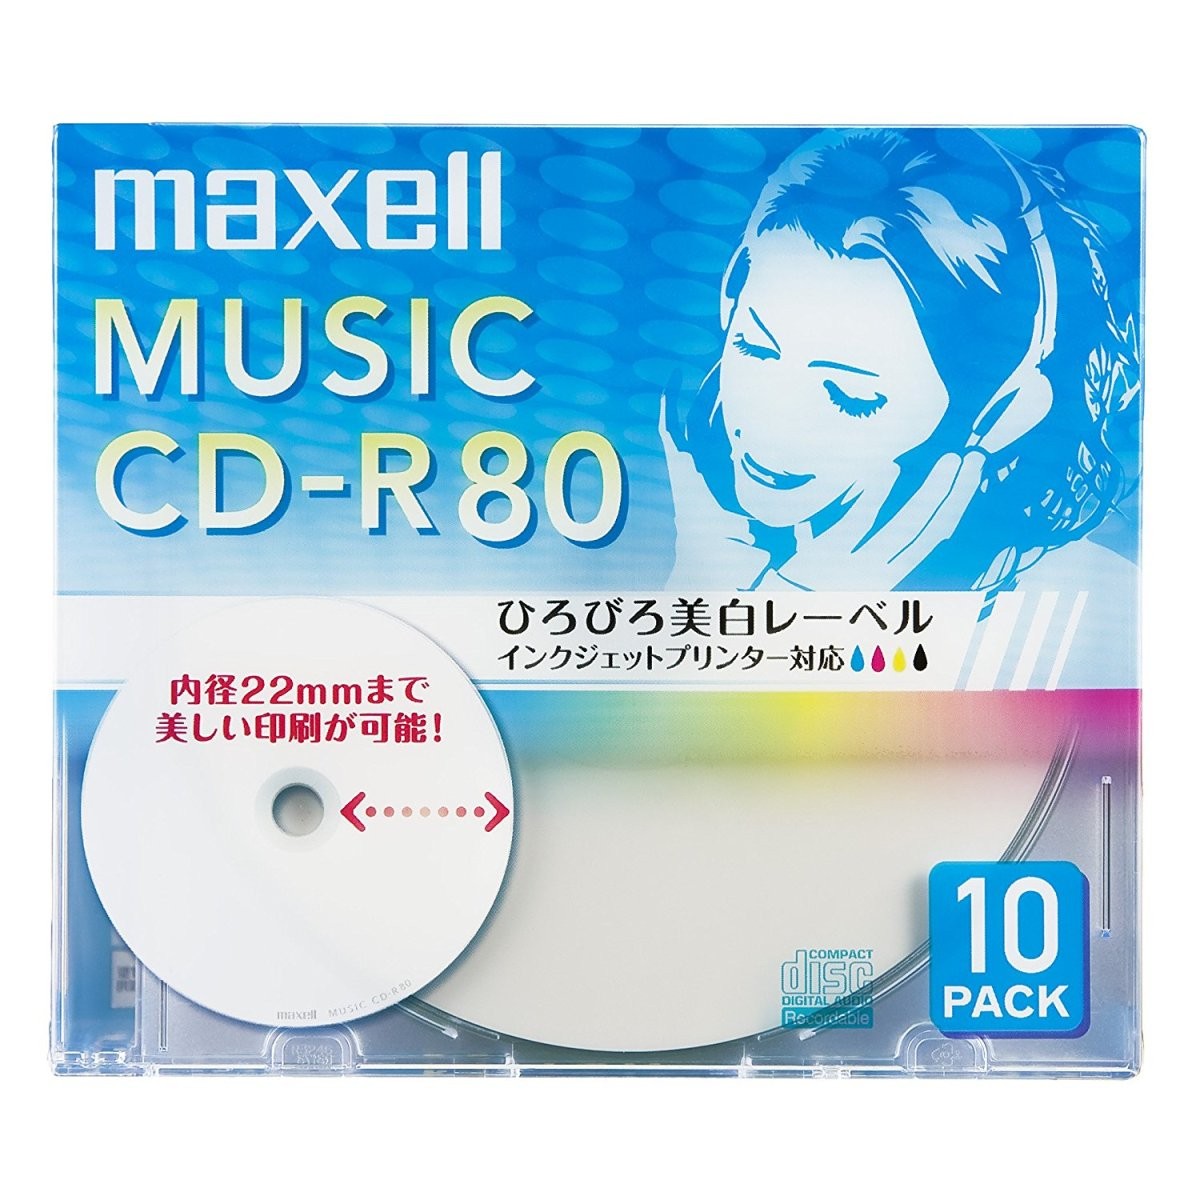 マクセル maxell 音楽用 CD-R 80分 インクジェットプリンタ対応ホワイト(ワイド印刷) 10枚 5mmケース入 CDRA80WP.10S